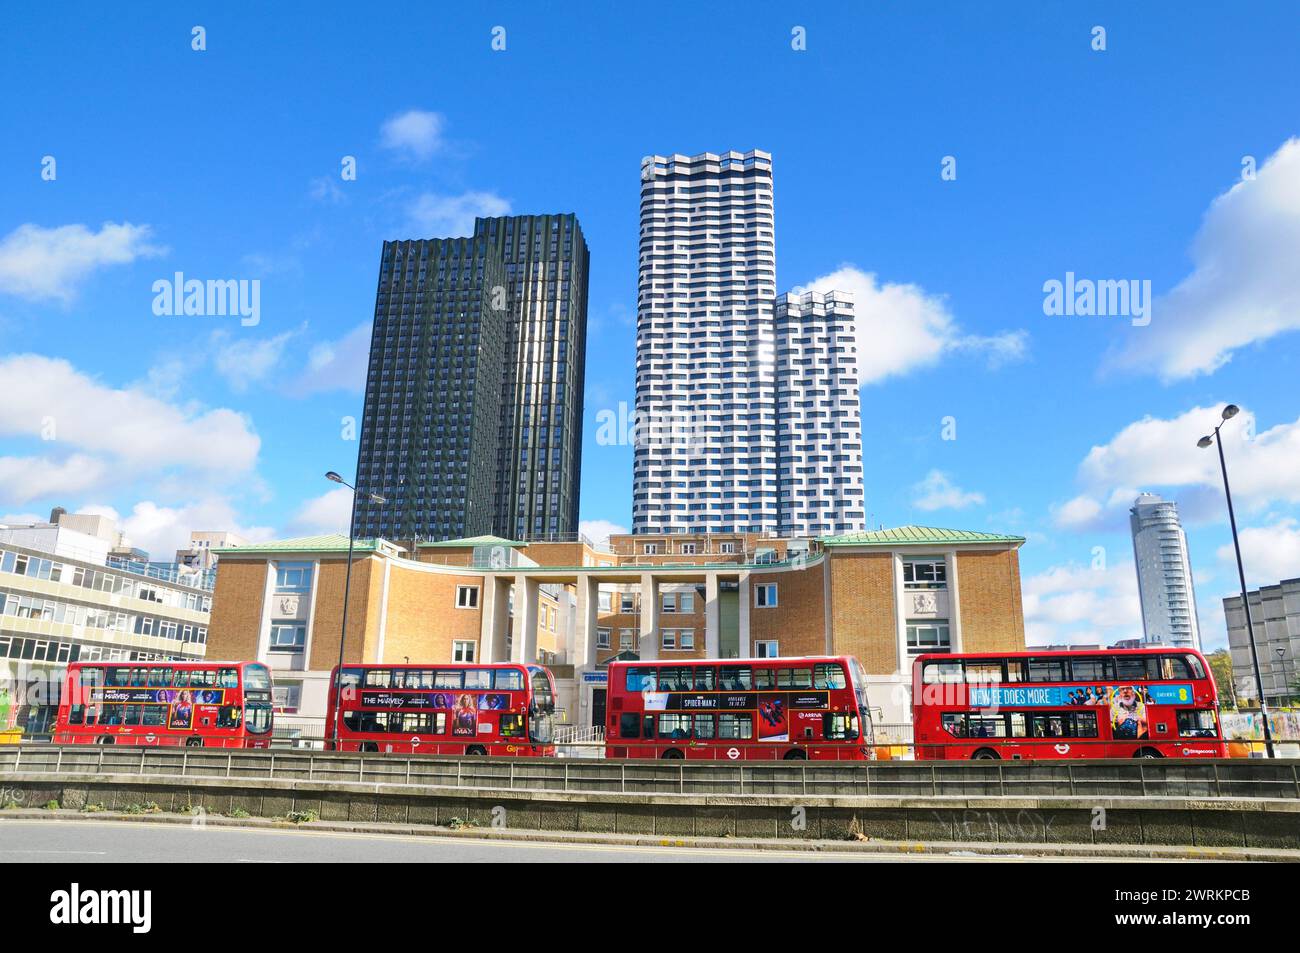 Bus rouges à impériale devant Croydon College avec HTA Design Buildings Ten Degrees et College Road le plus haut bâtiment résidentiel modulaire d'Europe Banque D'Images